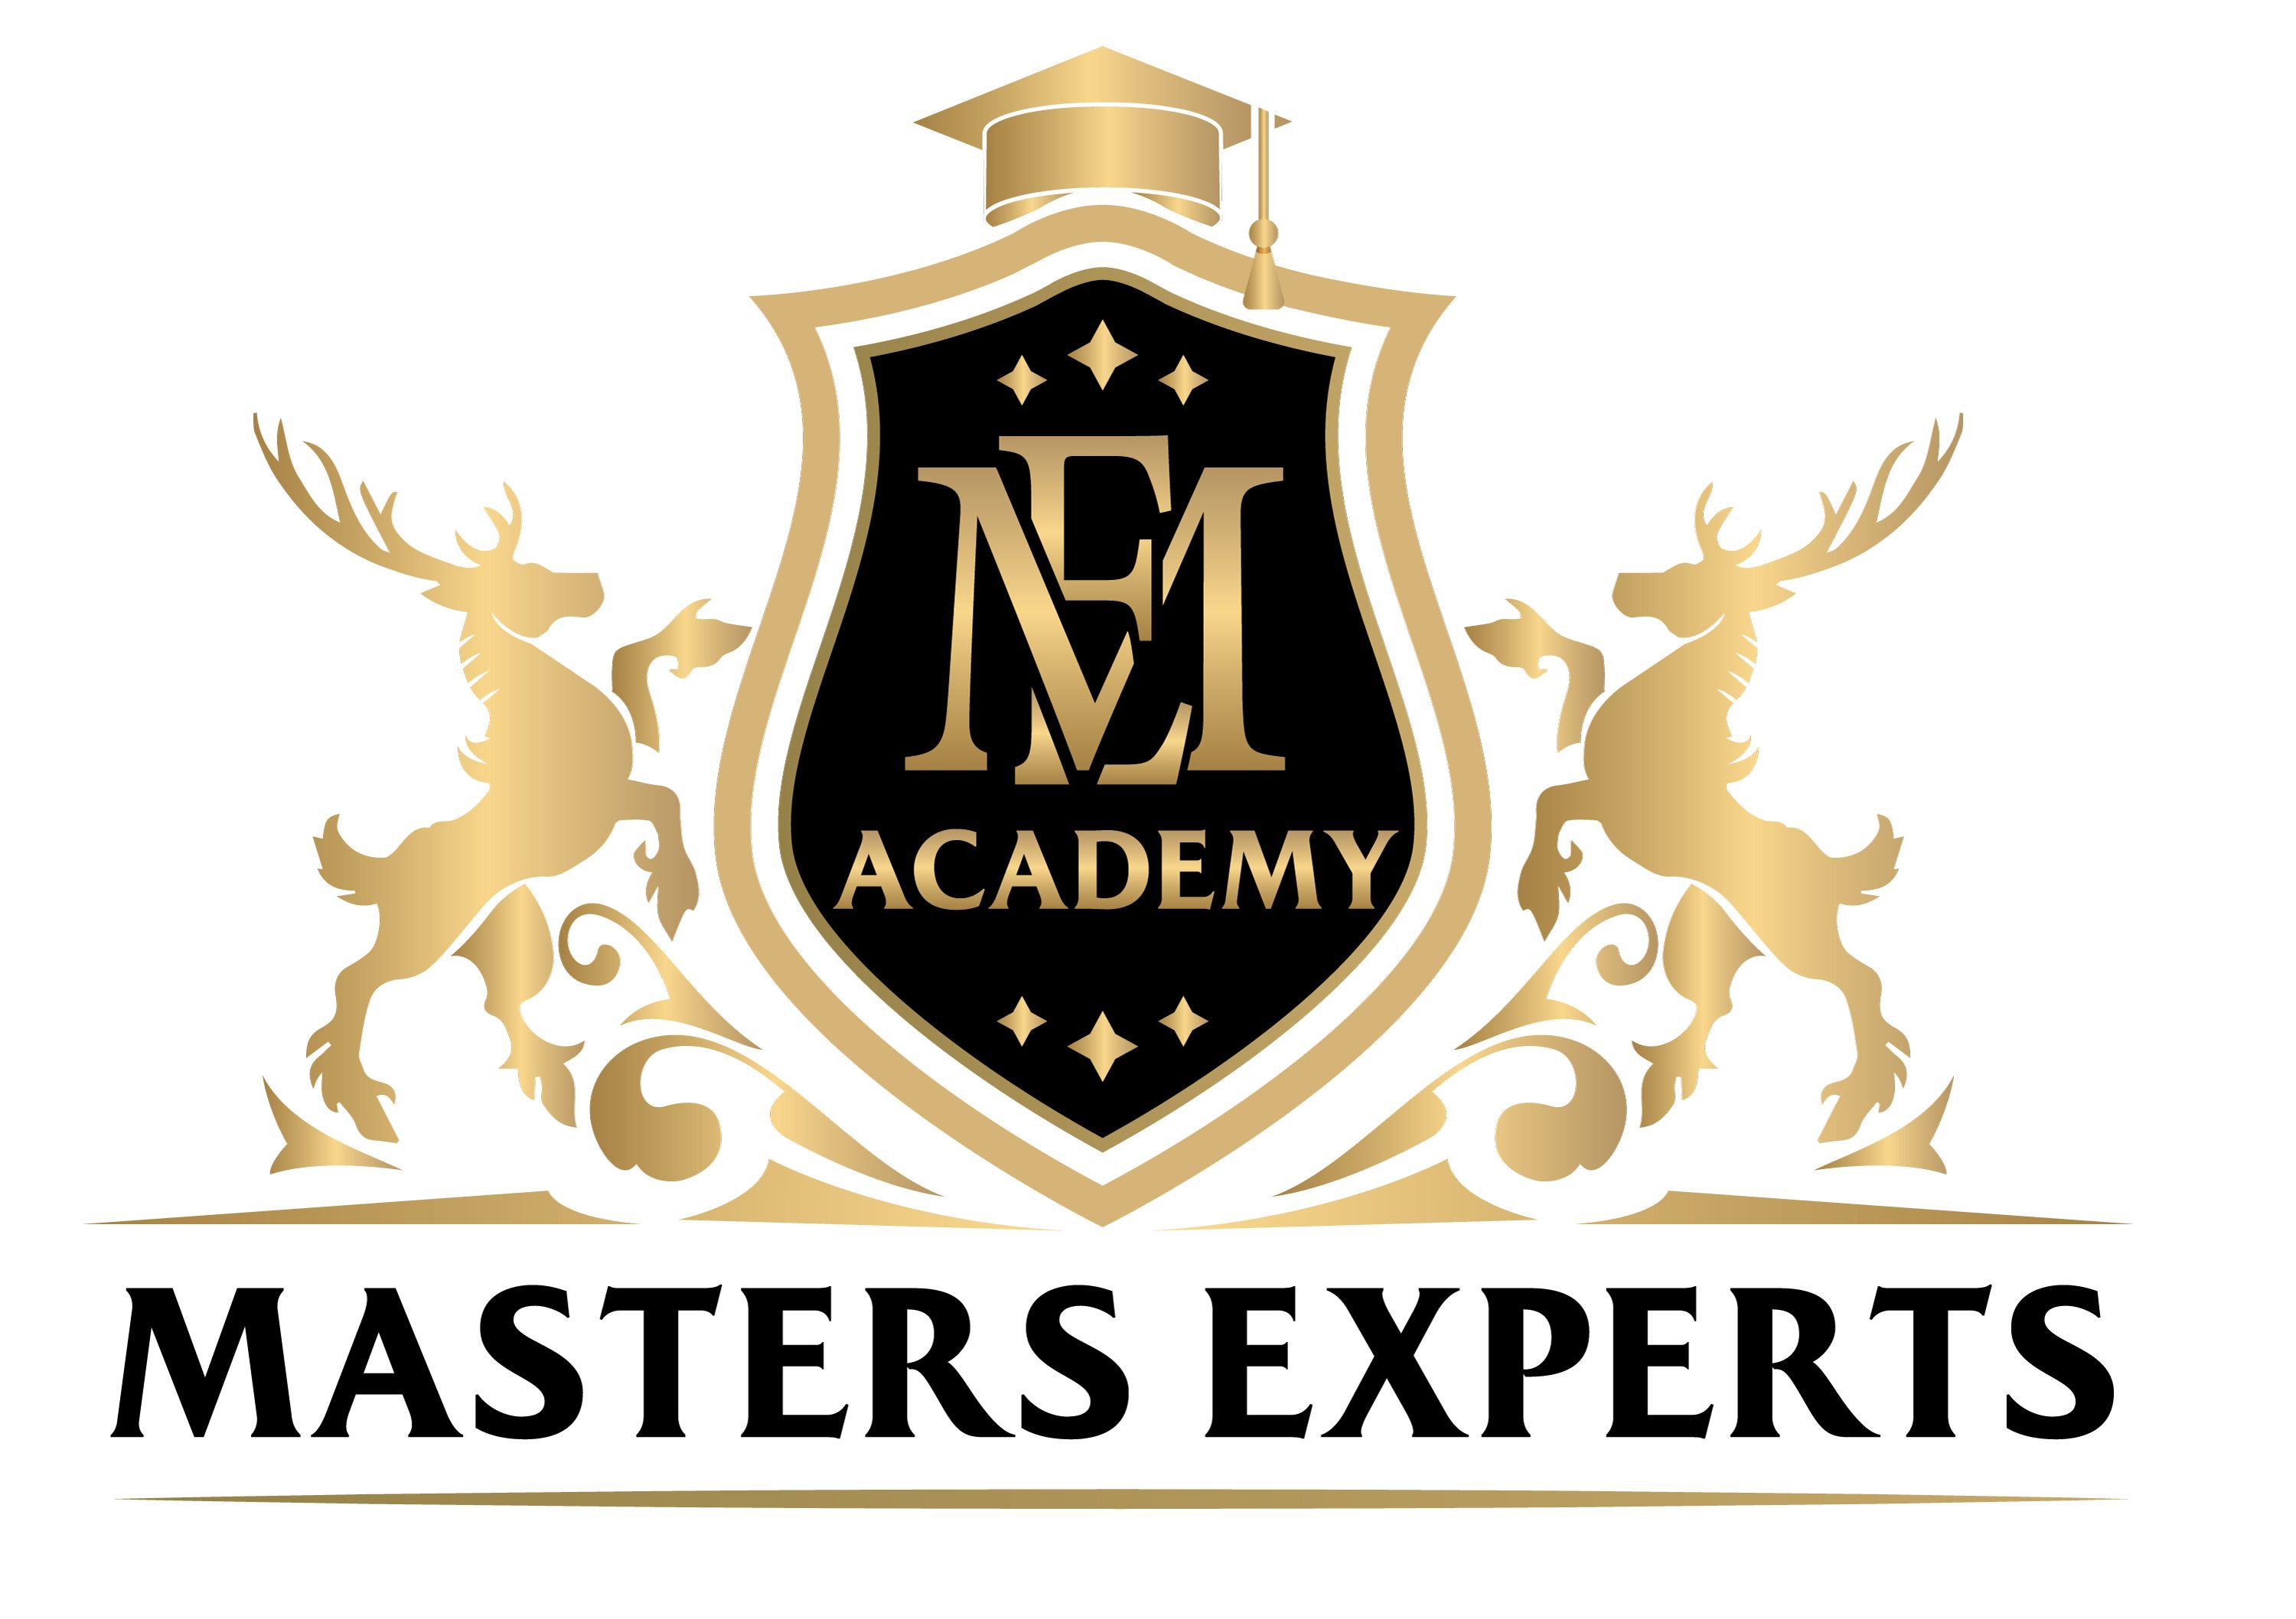 Masters Experts Academy: Formarse con expertos en profesiones de éxito